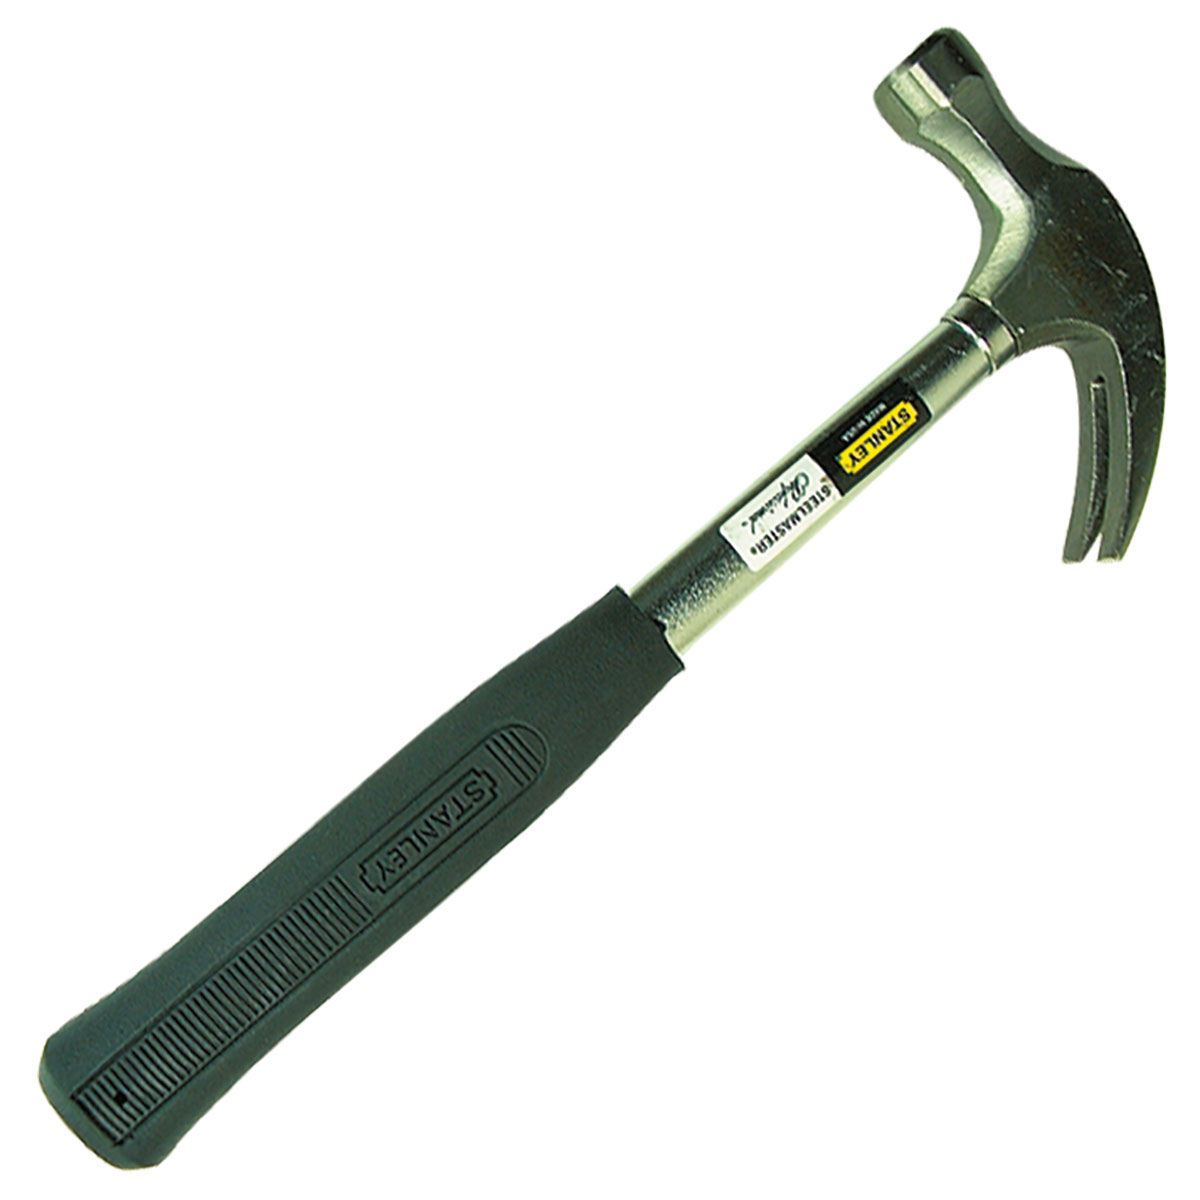 Stanley - Steelmaster - Claw Hammer - ParkerTools